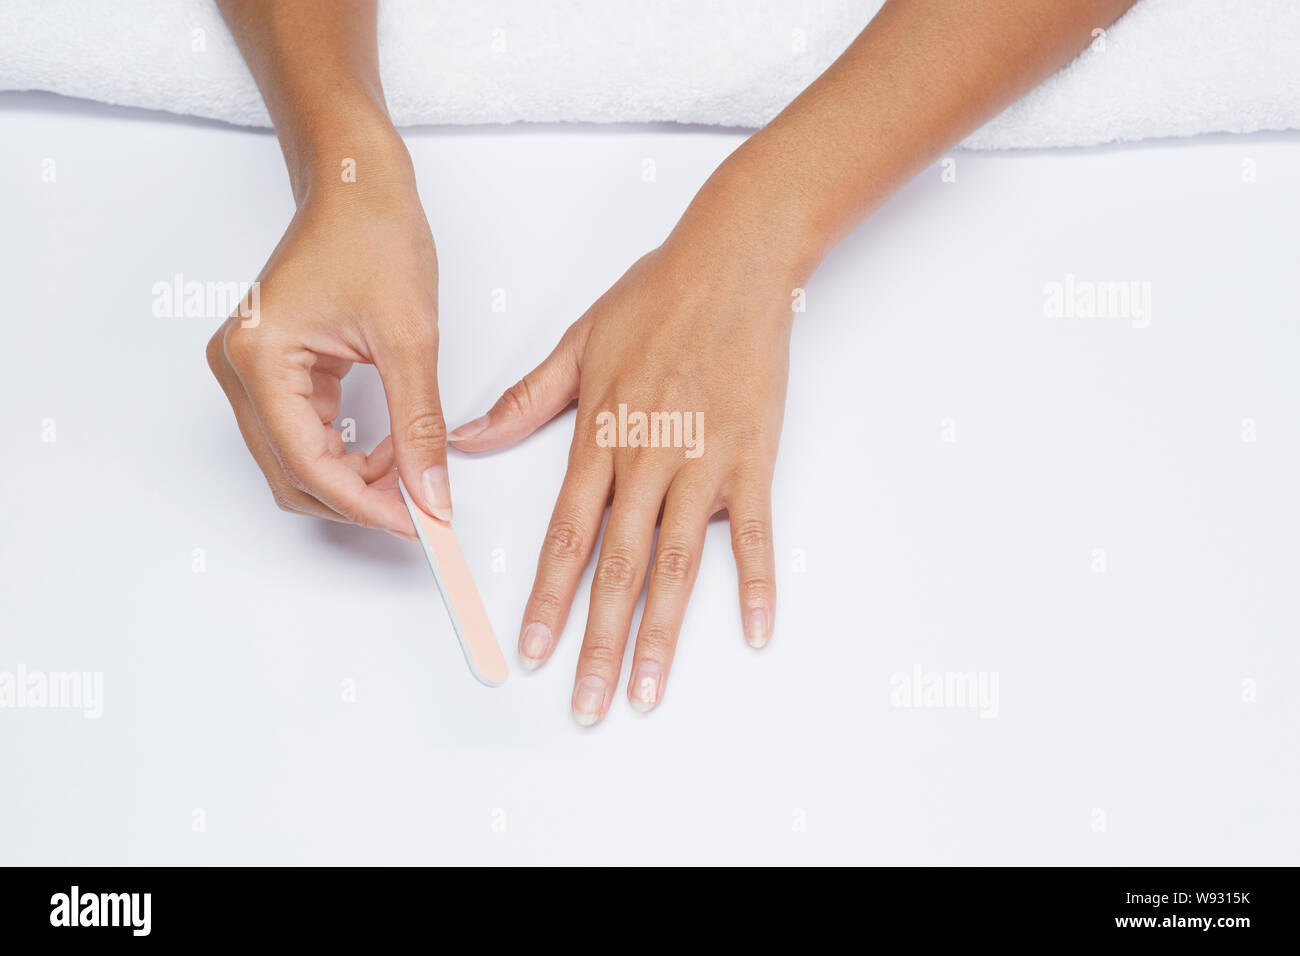 Mujer presentar su uñas uña manicura natural femenino grooming Foto de stock